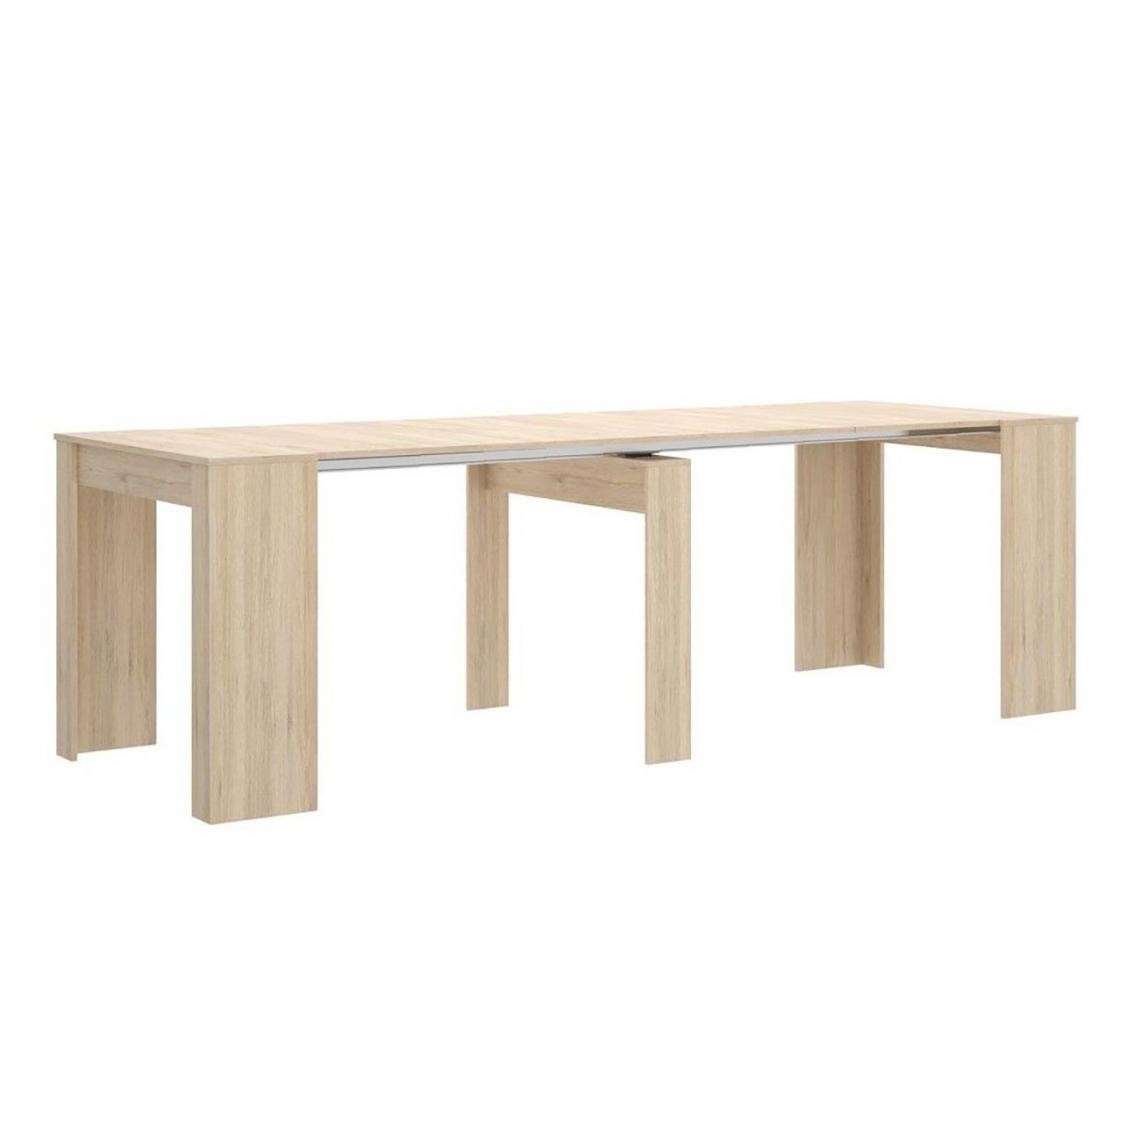 Pegane - Table console extensible en chêne naturel - Longueur 54-239 x Hauteur 77 x Profondeur 90 cm - Consoles